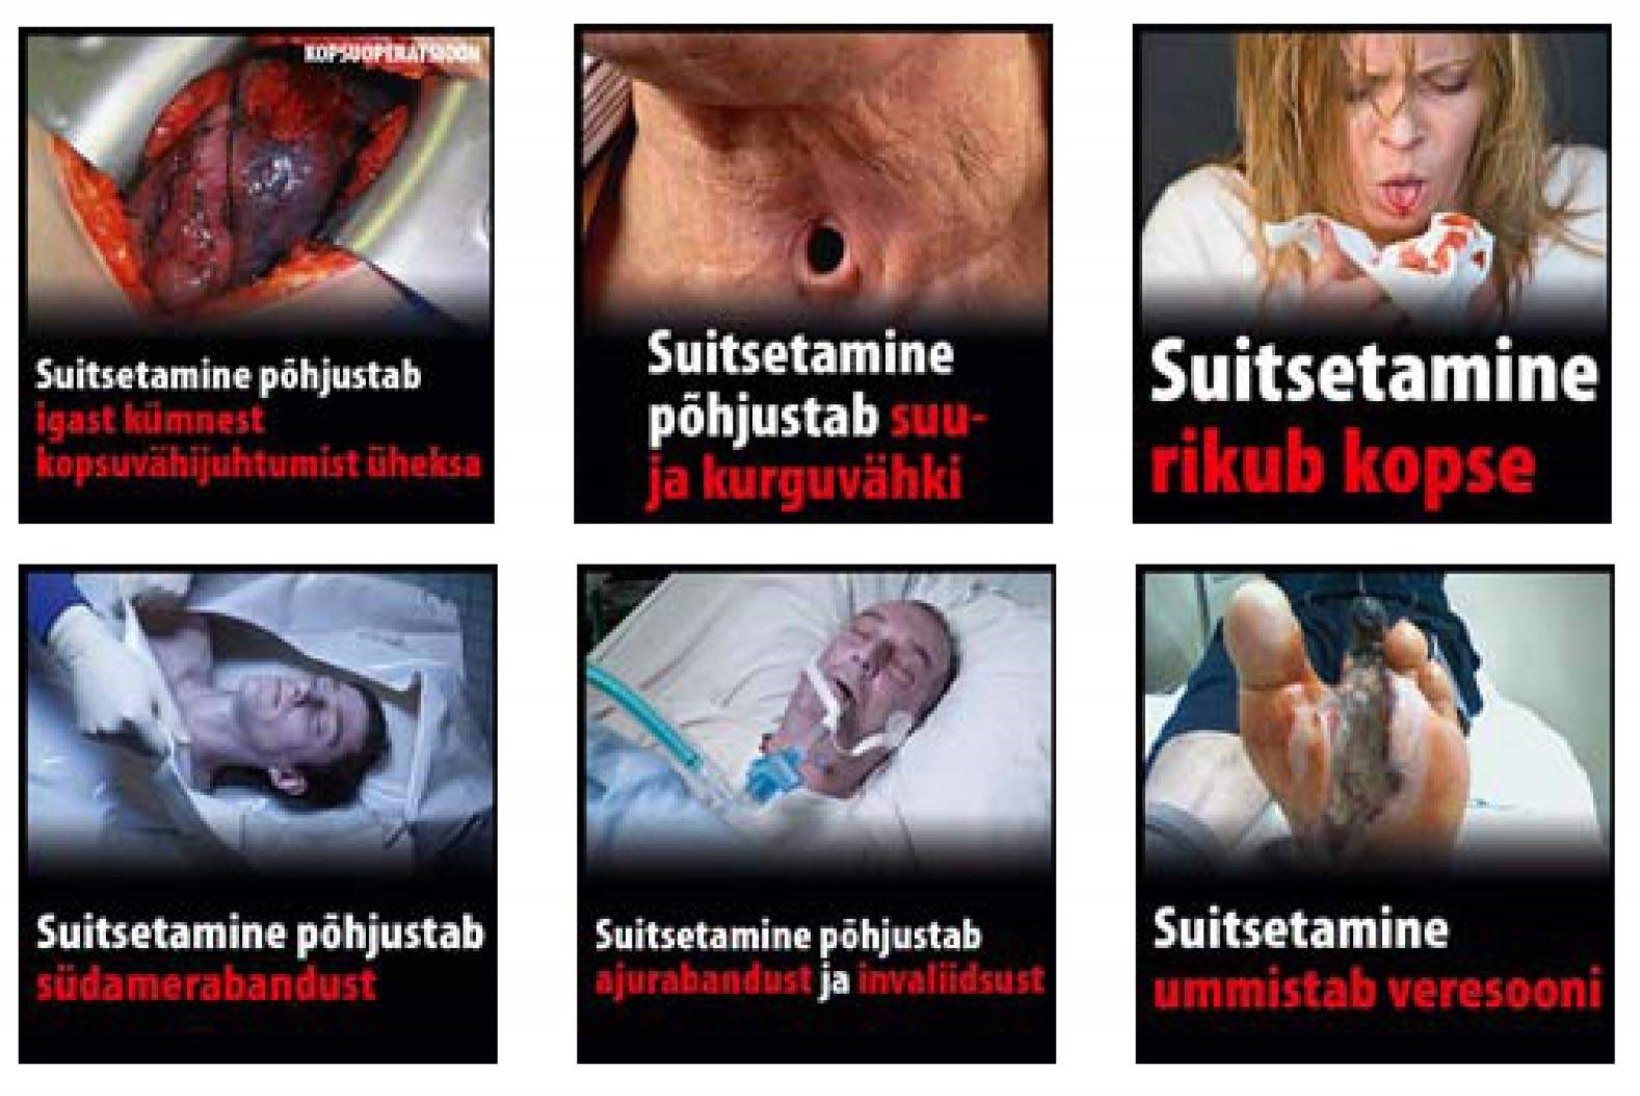 Sigaretipakkidele tulevad räiged eestikeelsed hoiatussildid